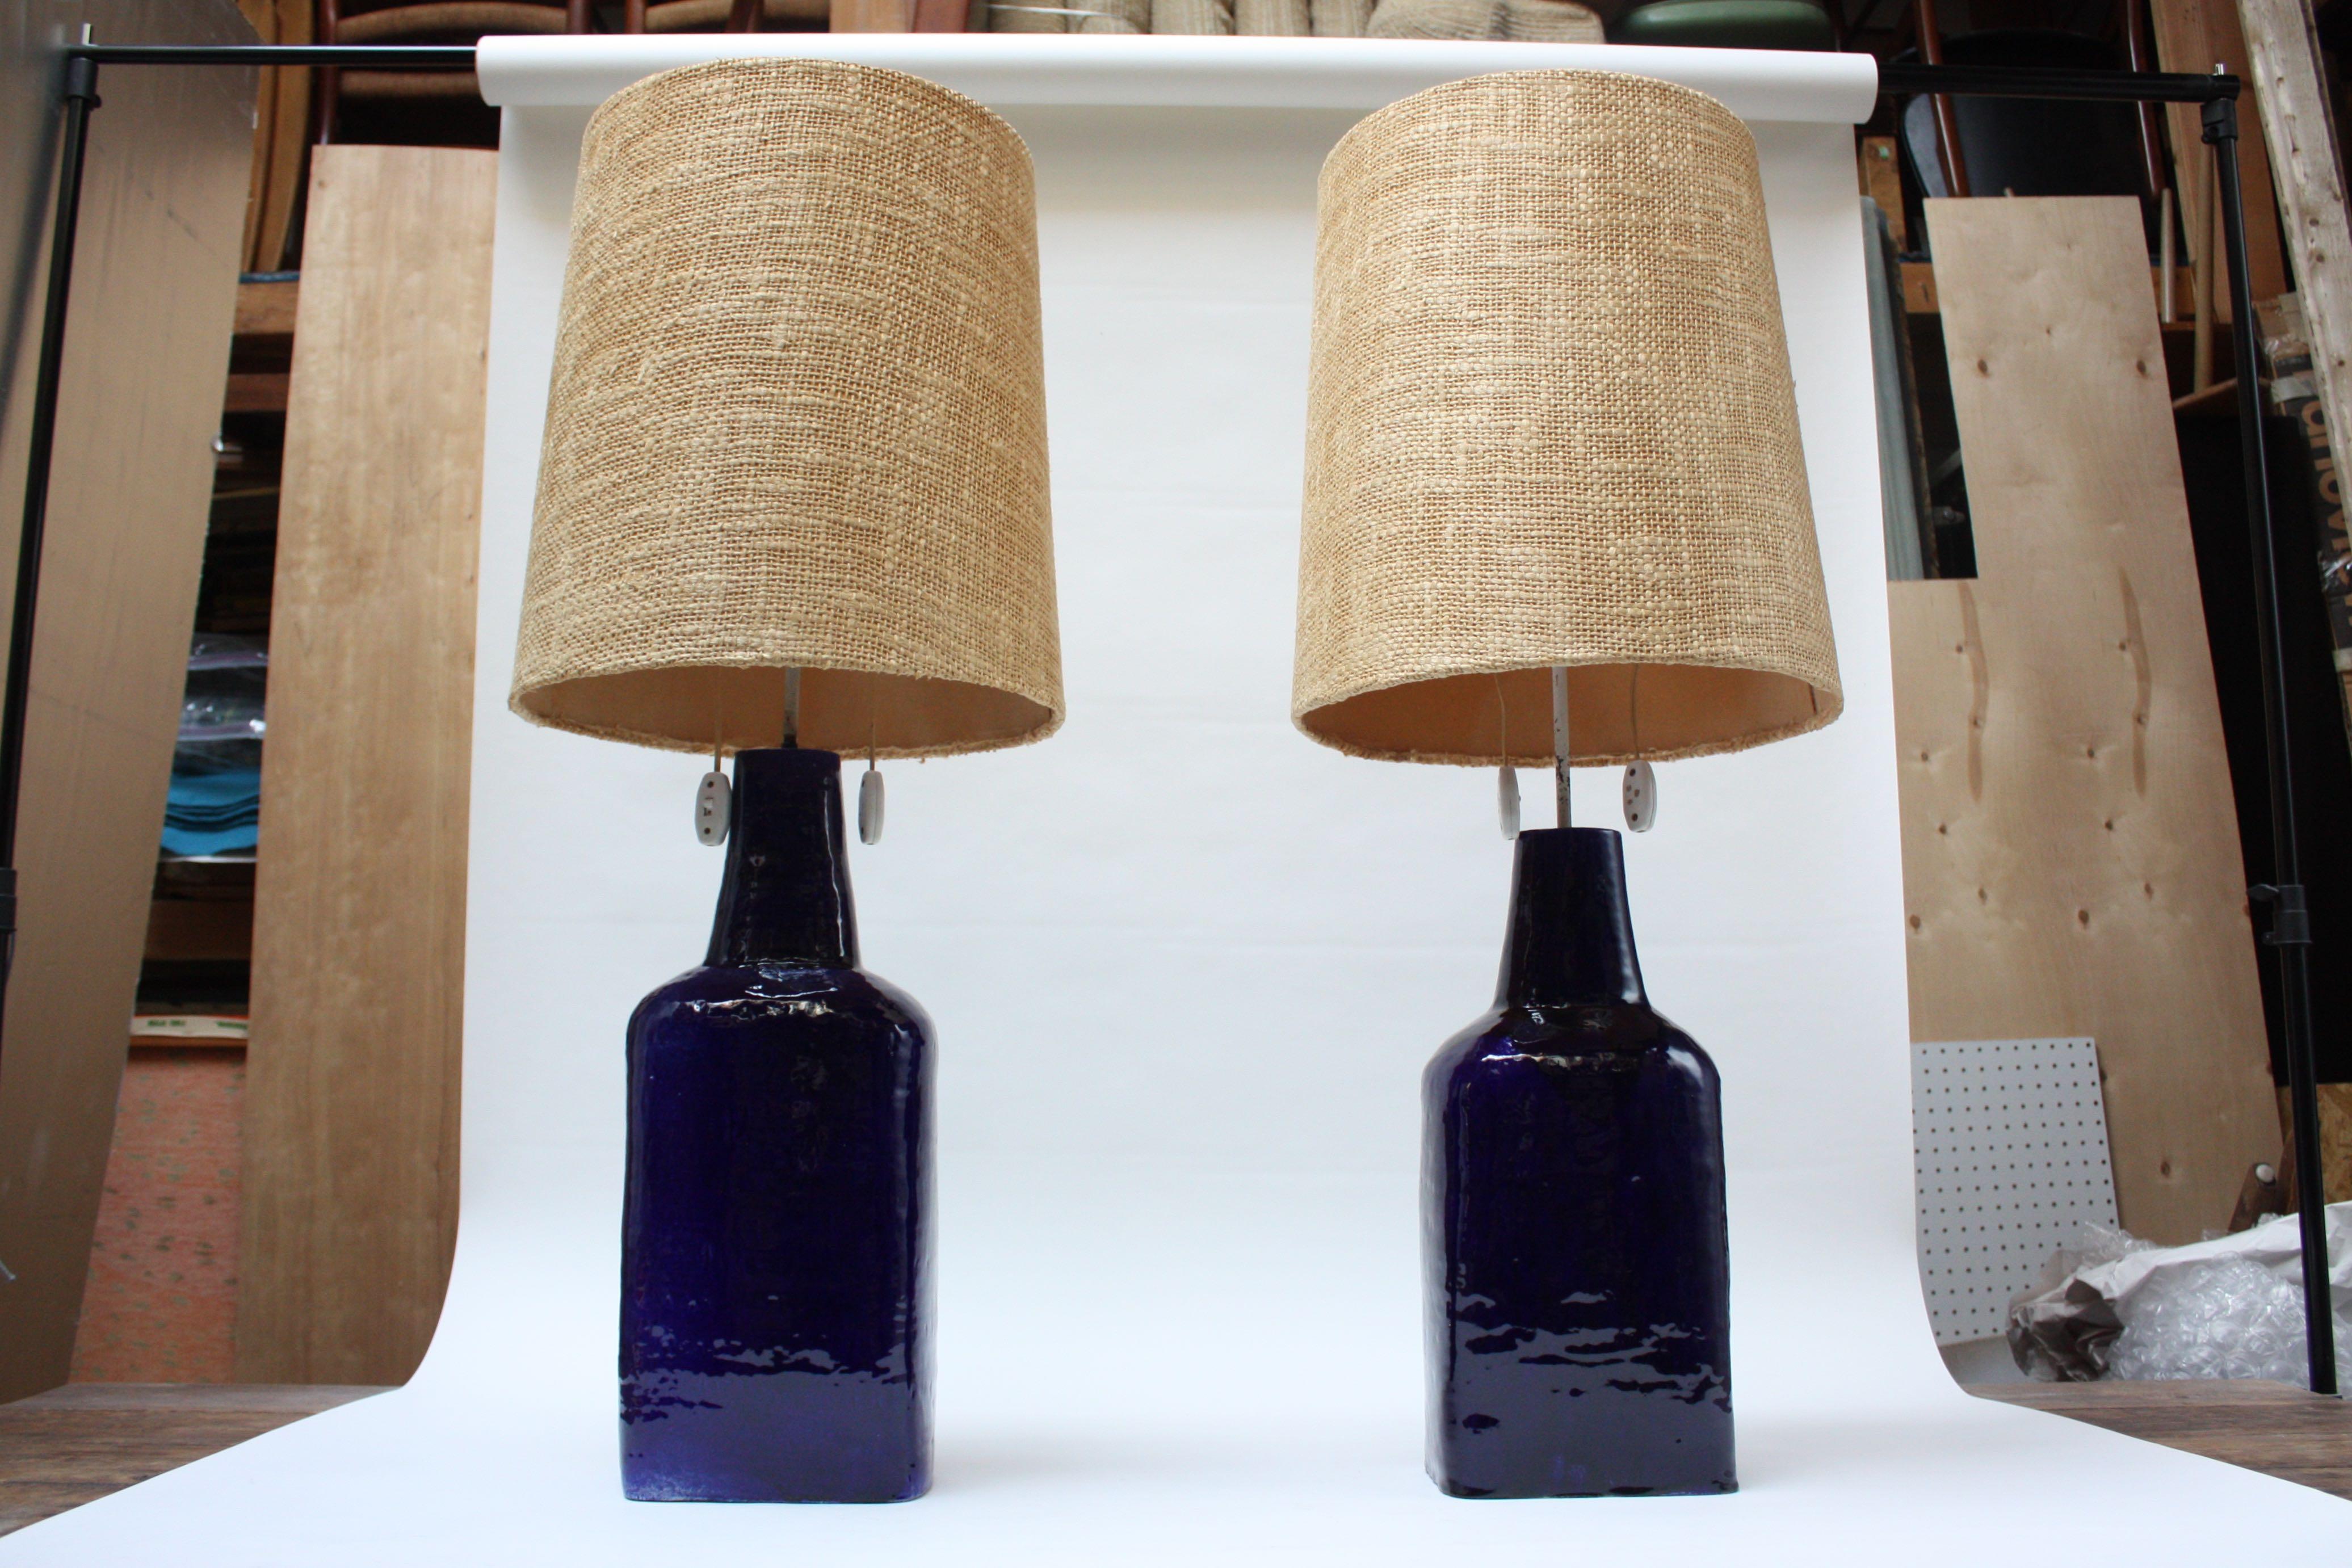 Außergewöhnliches und seltenes Paar großer Keramik-Tischlampen des Schweizer Keramikers Mattli (um 1960). Bestehend aus Terrakotta-Böden mit einer hochglänzenden indigoblauen Glasur. Verfügt über zwei Steckdosen und große konische Diffusoren mit